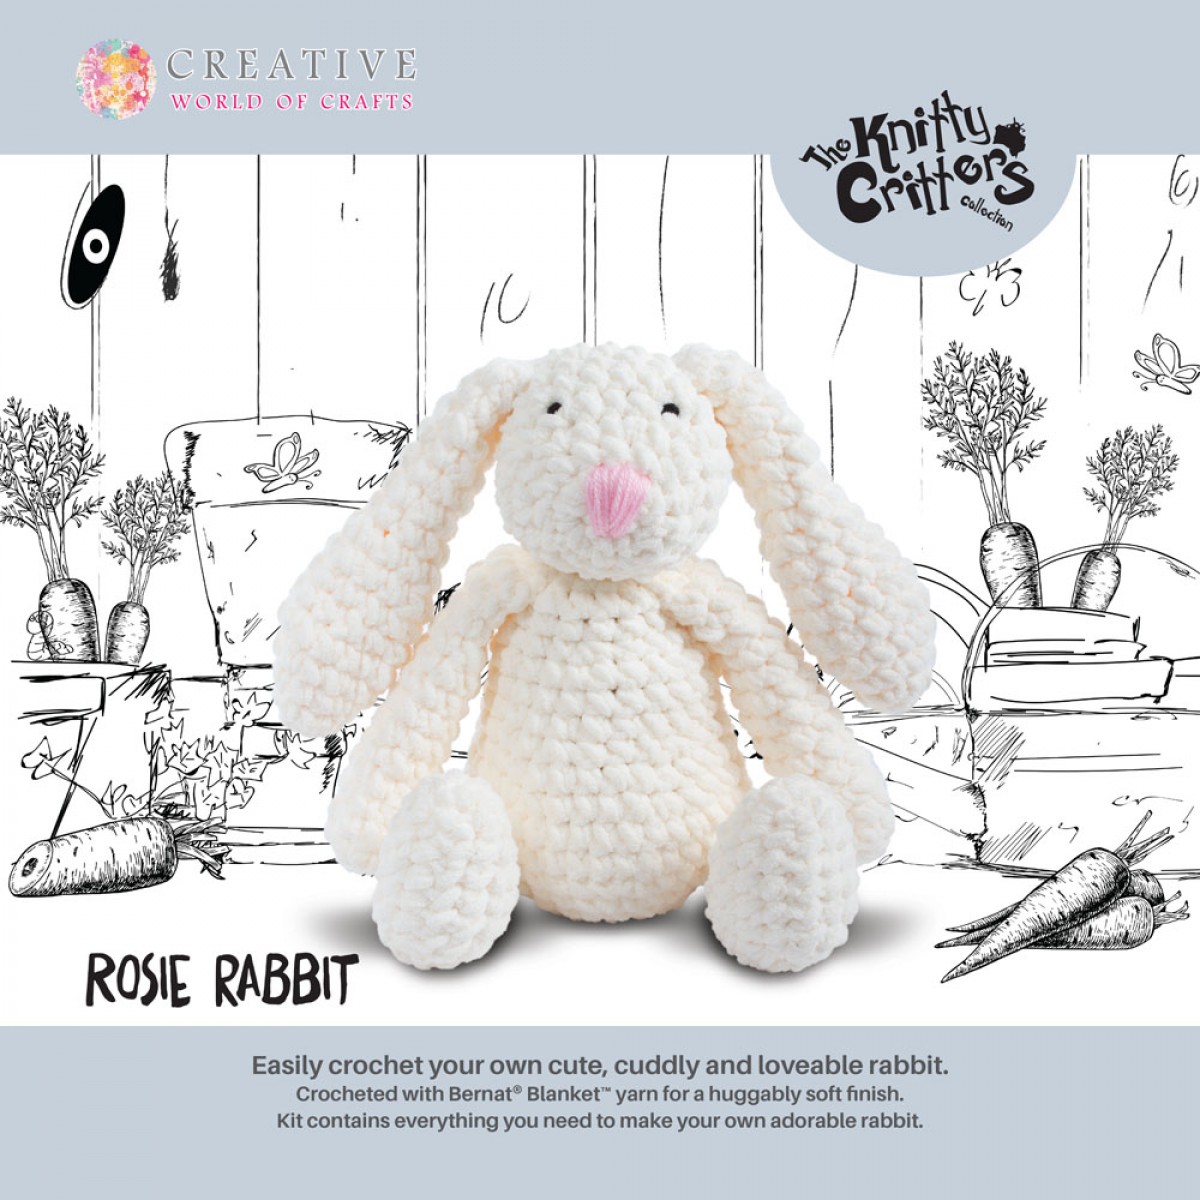 Disney x Knitty Critters Dumbo Crochet Kit, £75.00